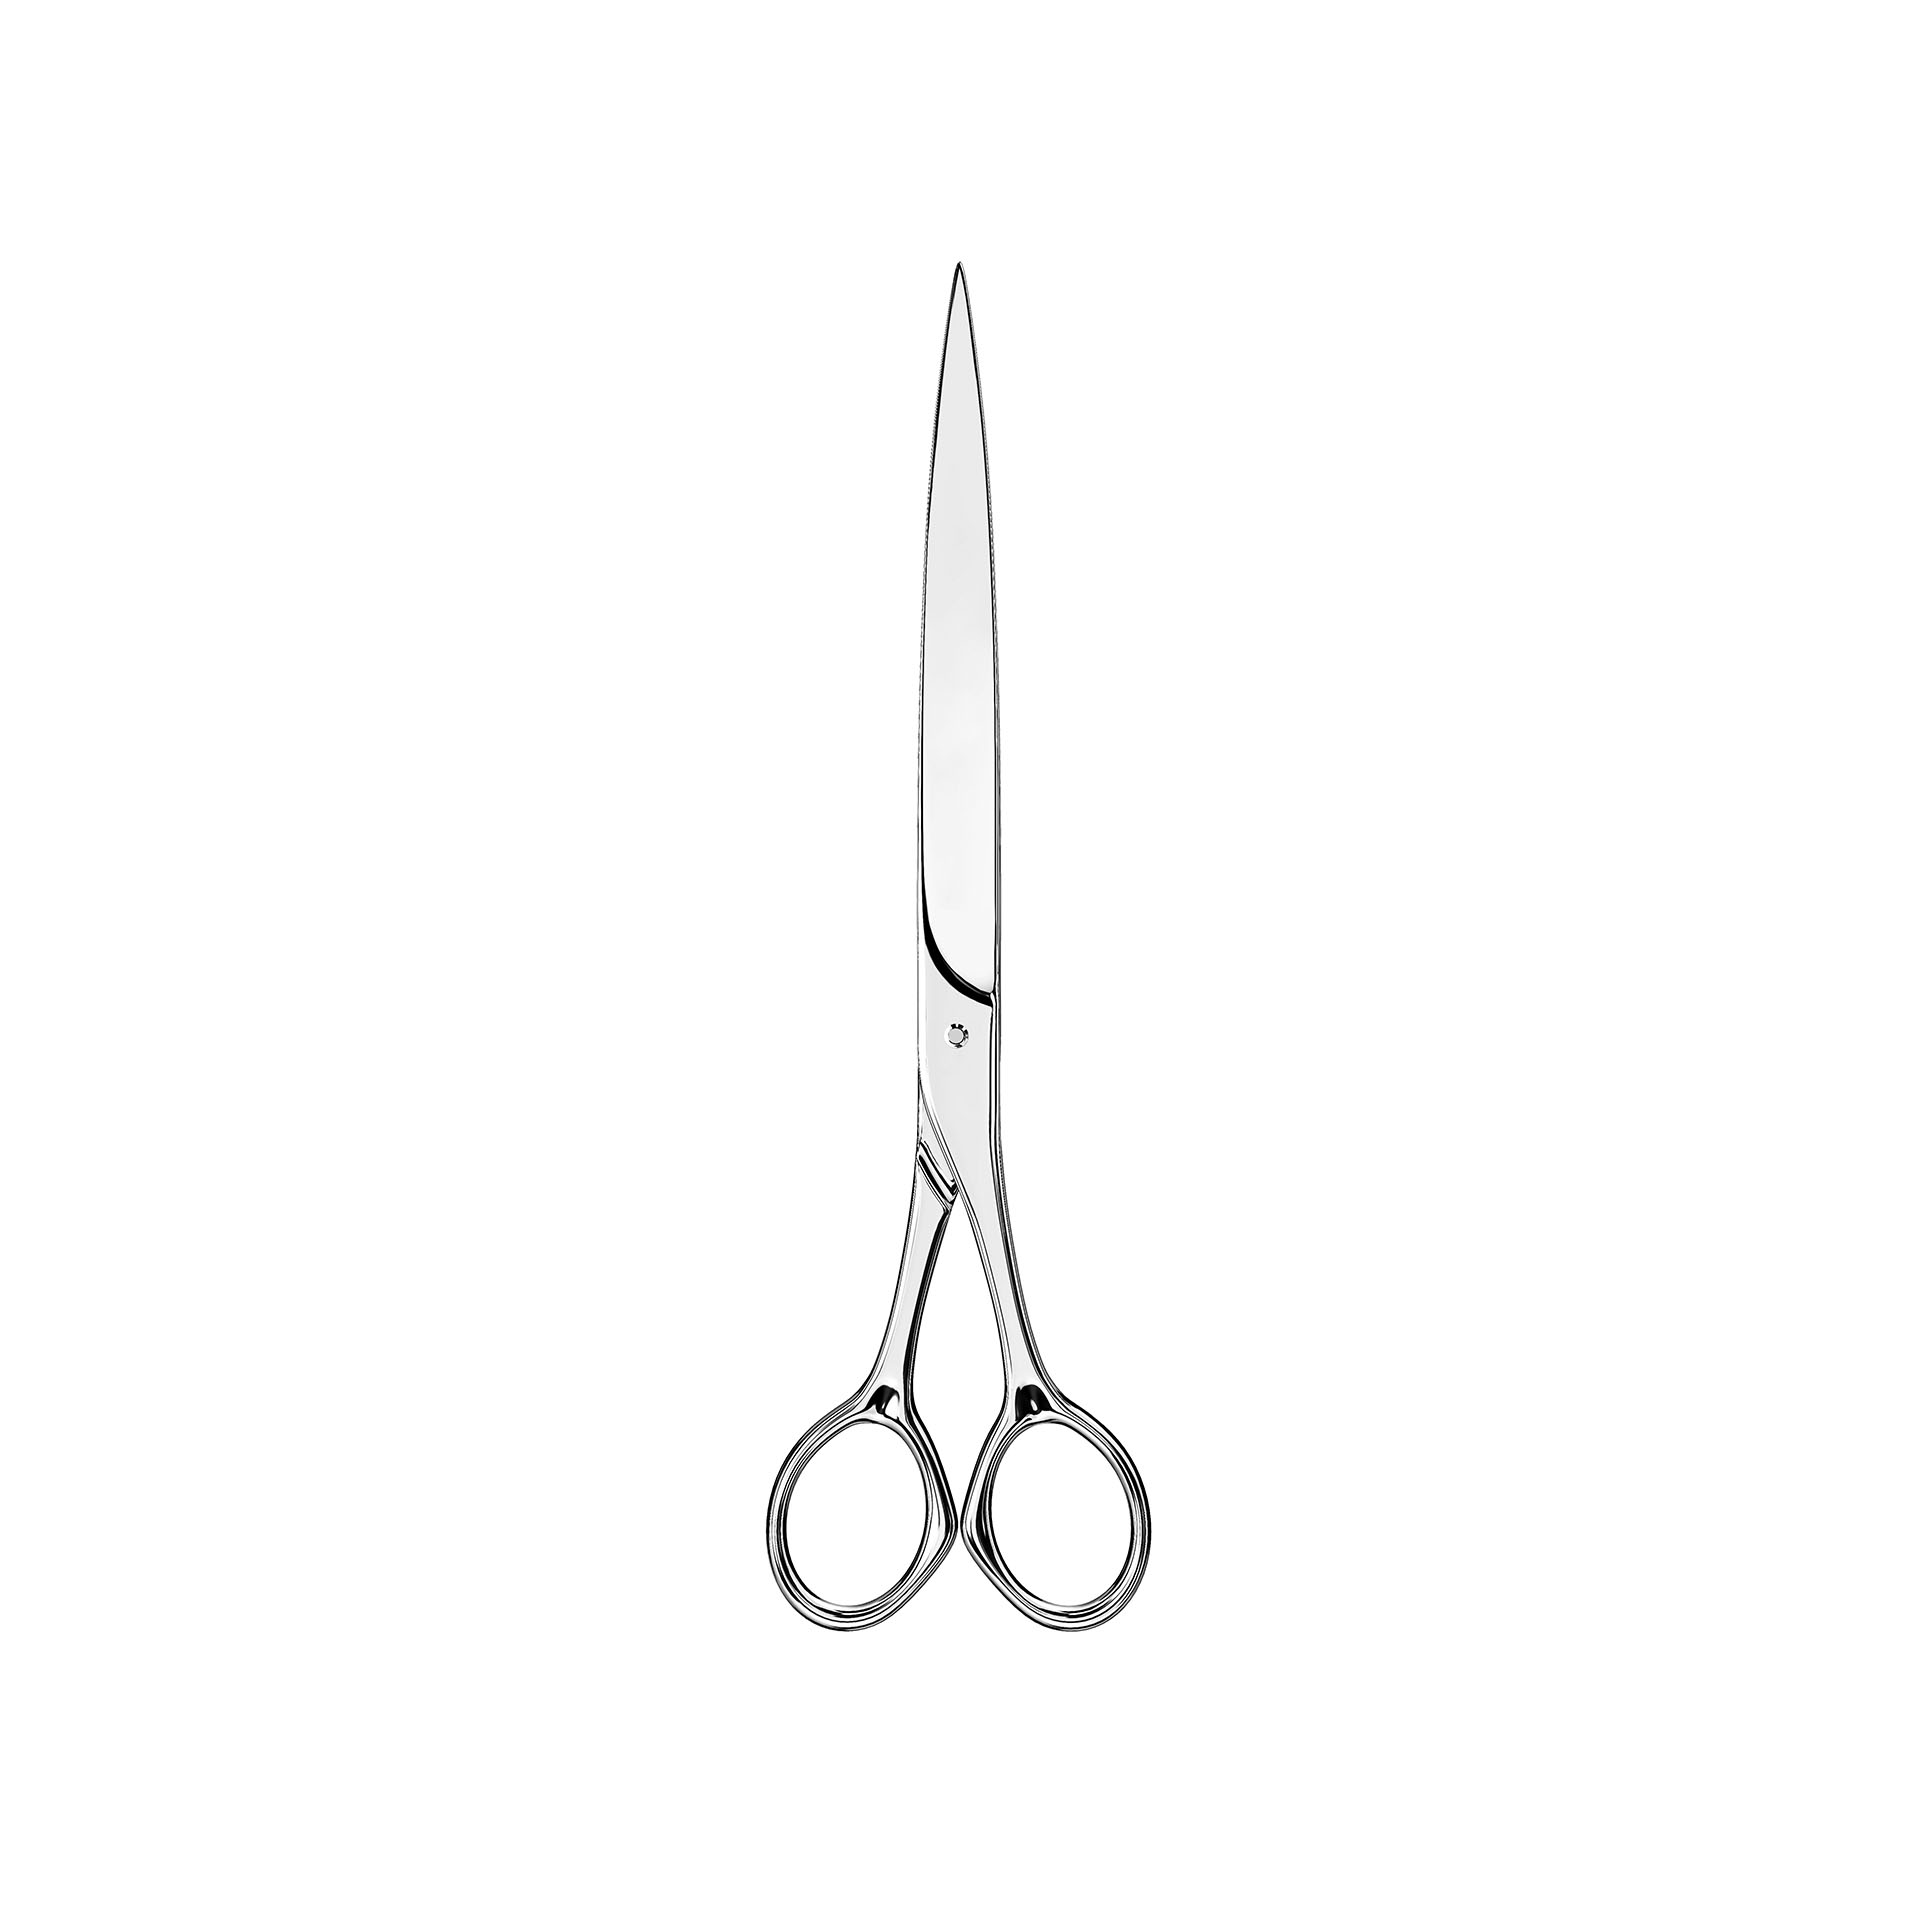 9 inch scissors M-772 CT El Casco